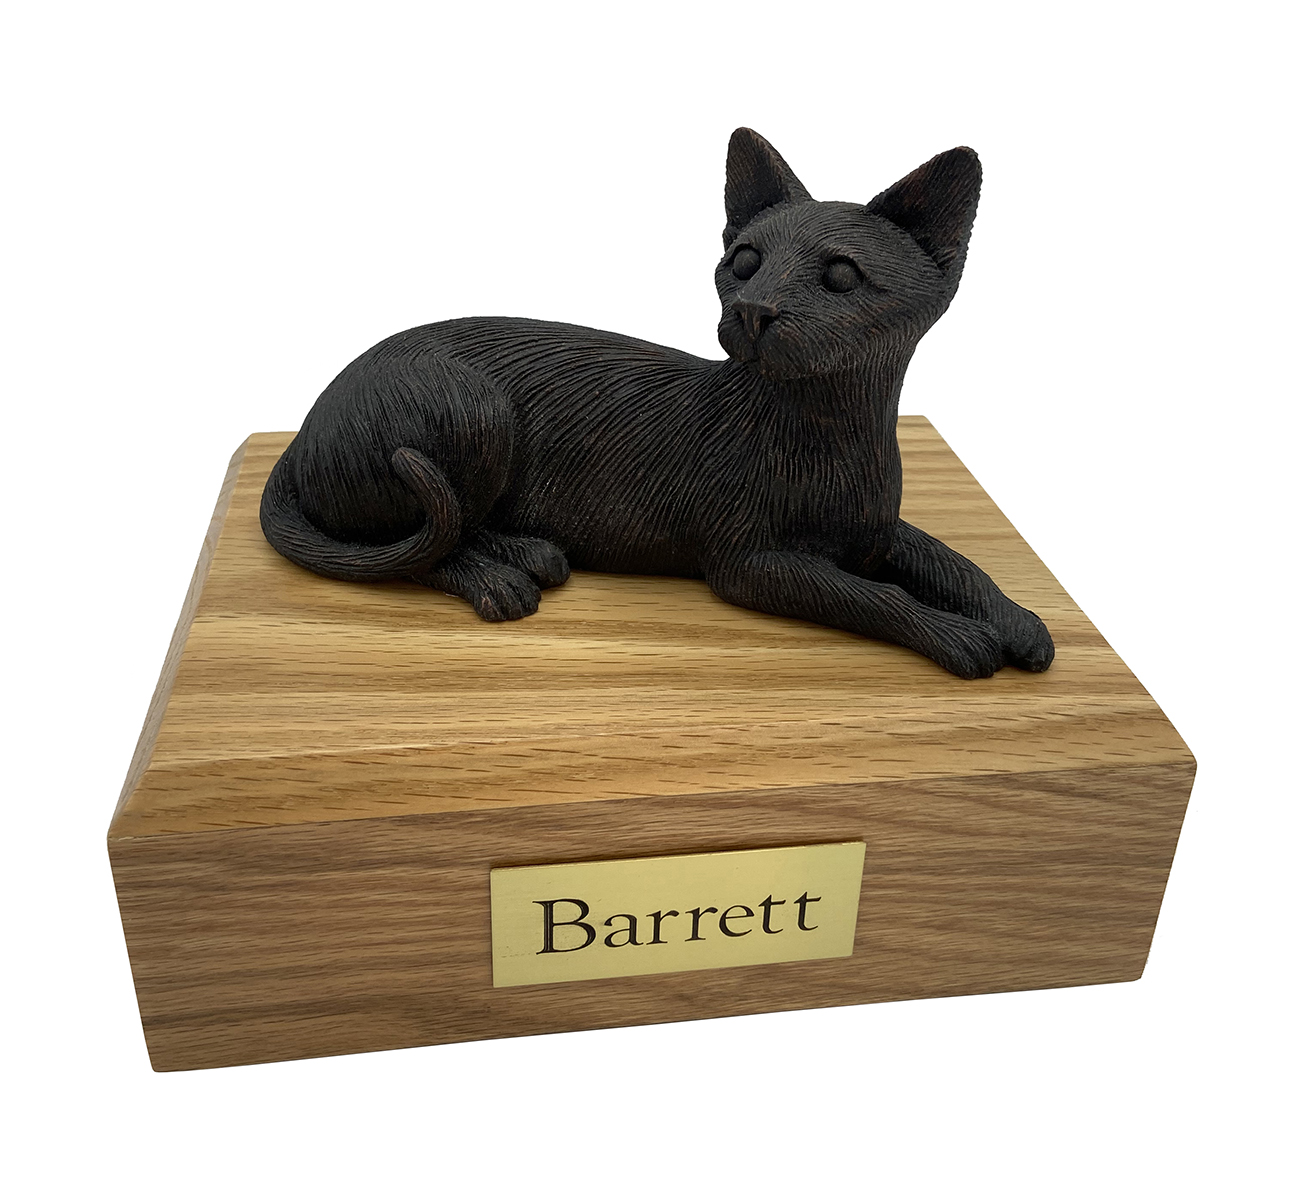 Cat, Siamese, Bronze - Figurine Urn